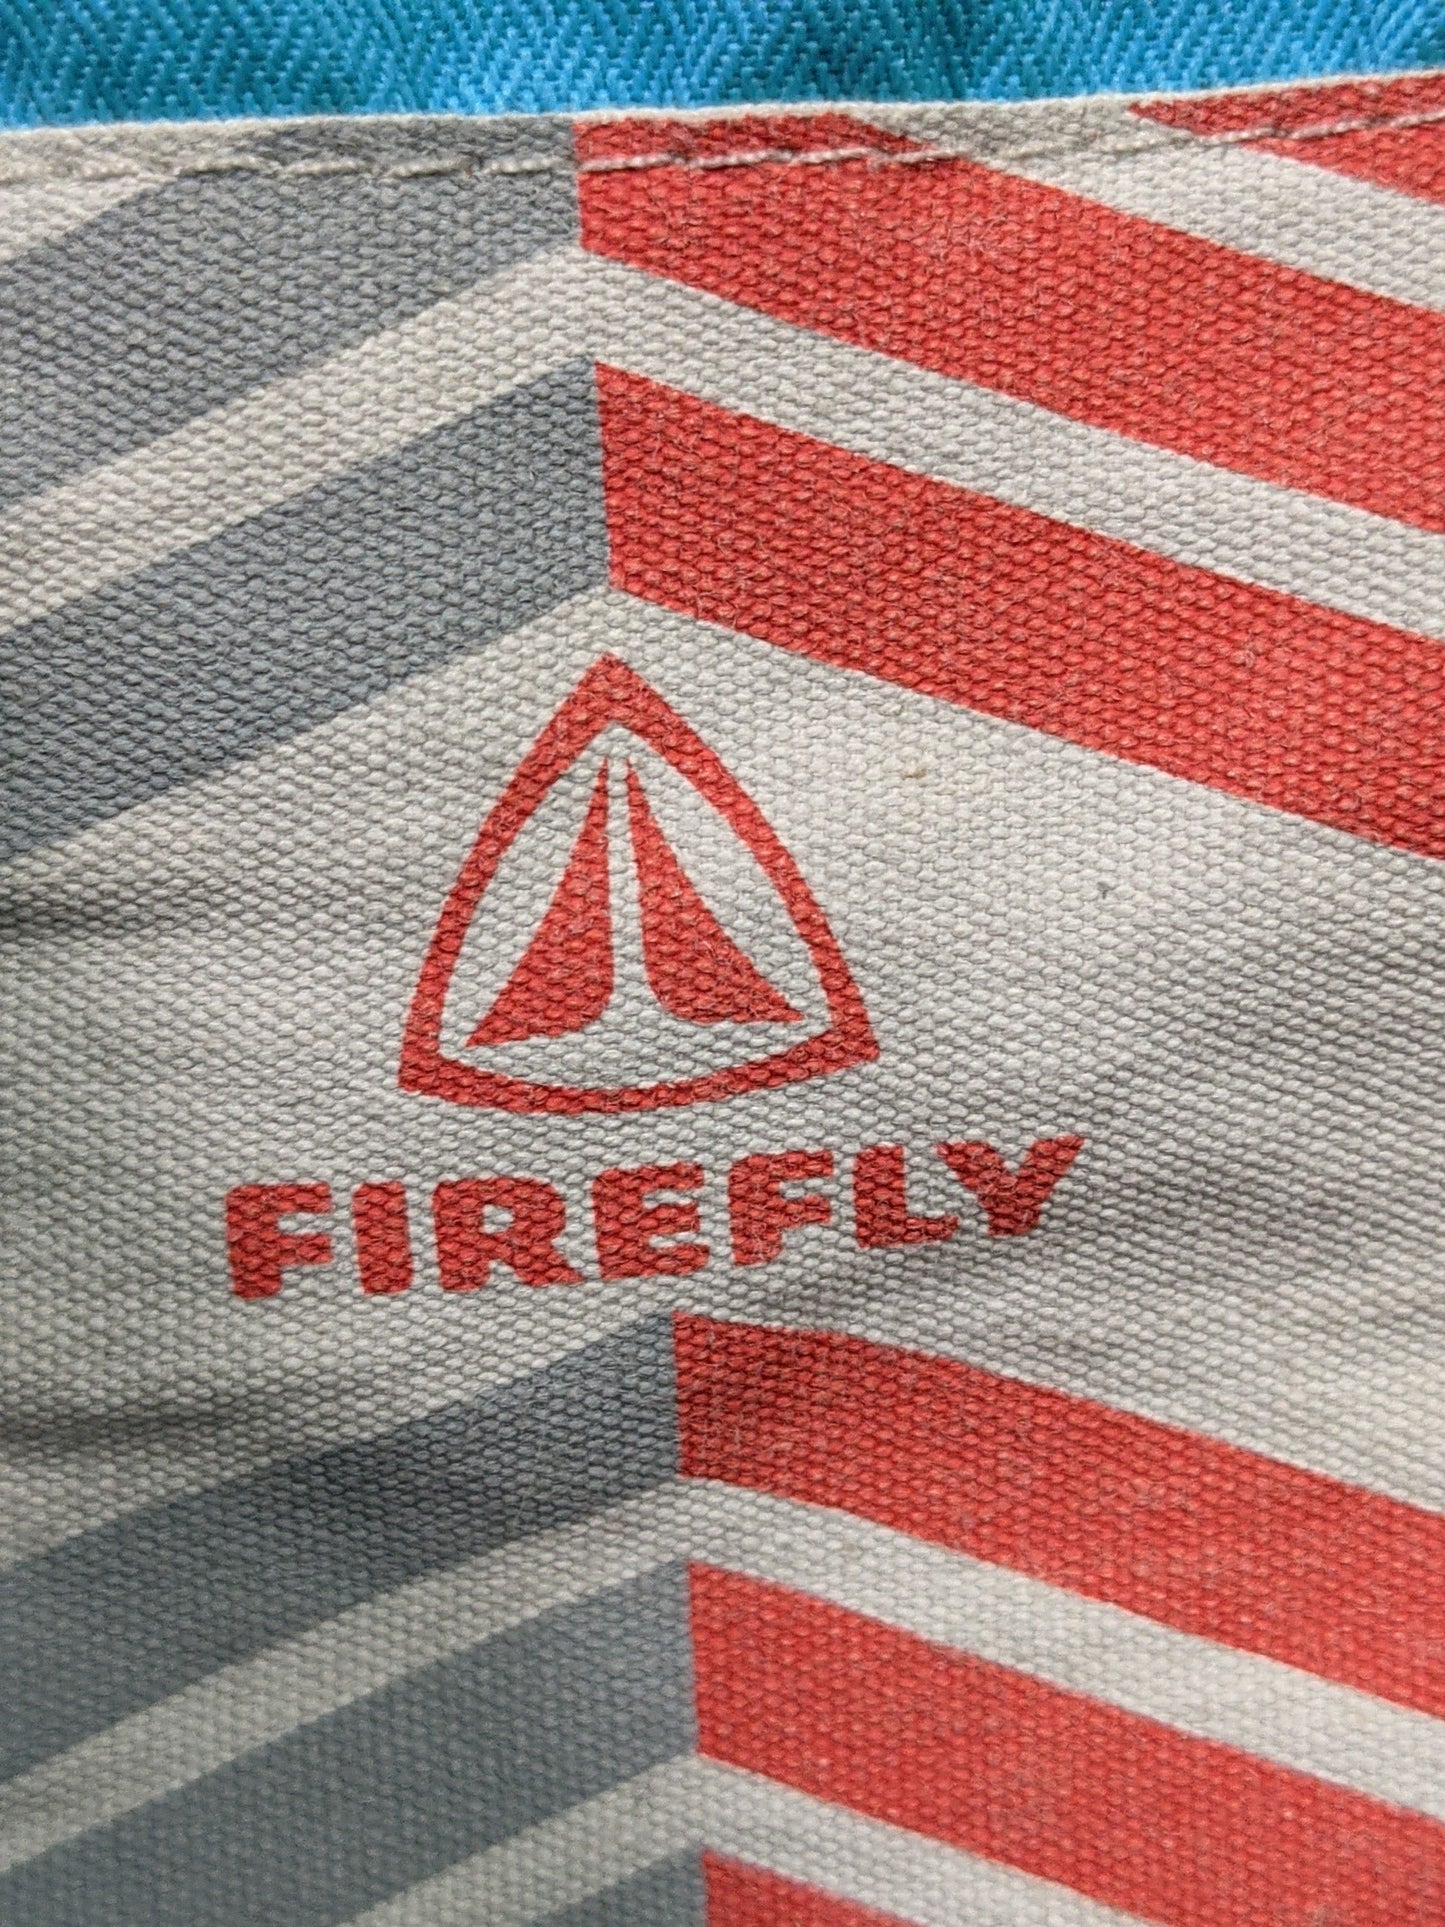 Firefly Hooded Ski Board Jacket Size Youth Large Blue Used Coat